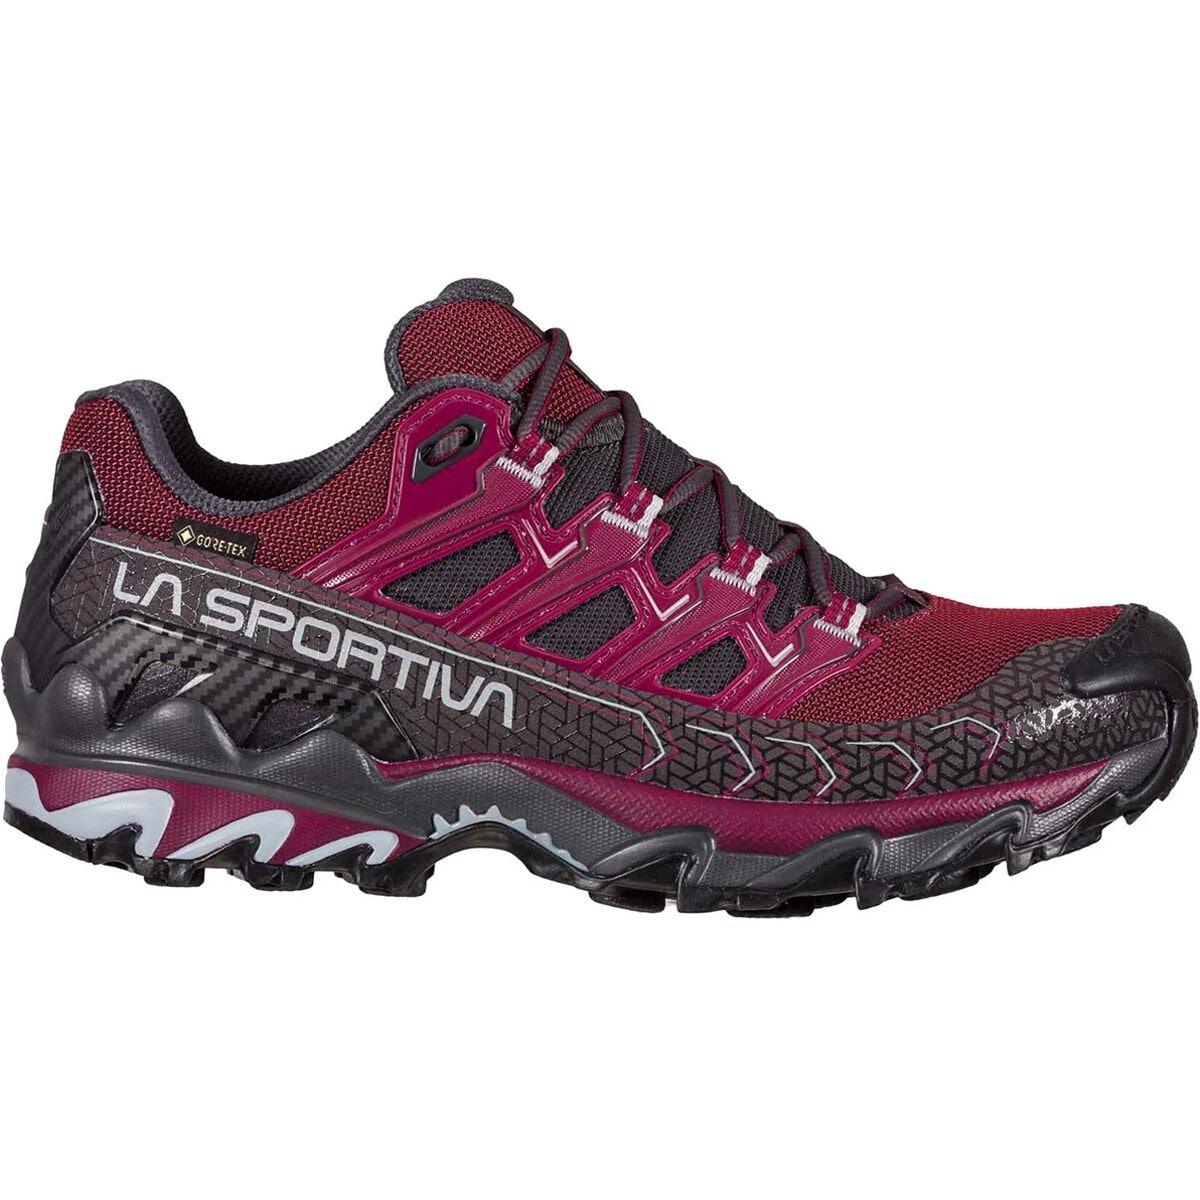 Ultra Raptor II Wide GTX Trail Running Shoe - Women